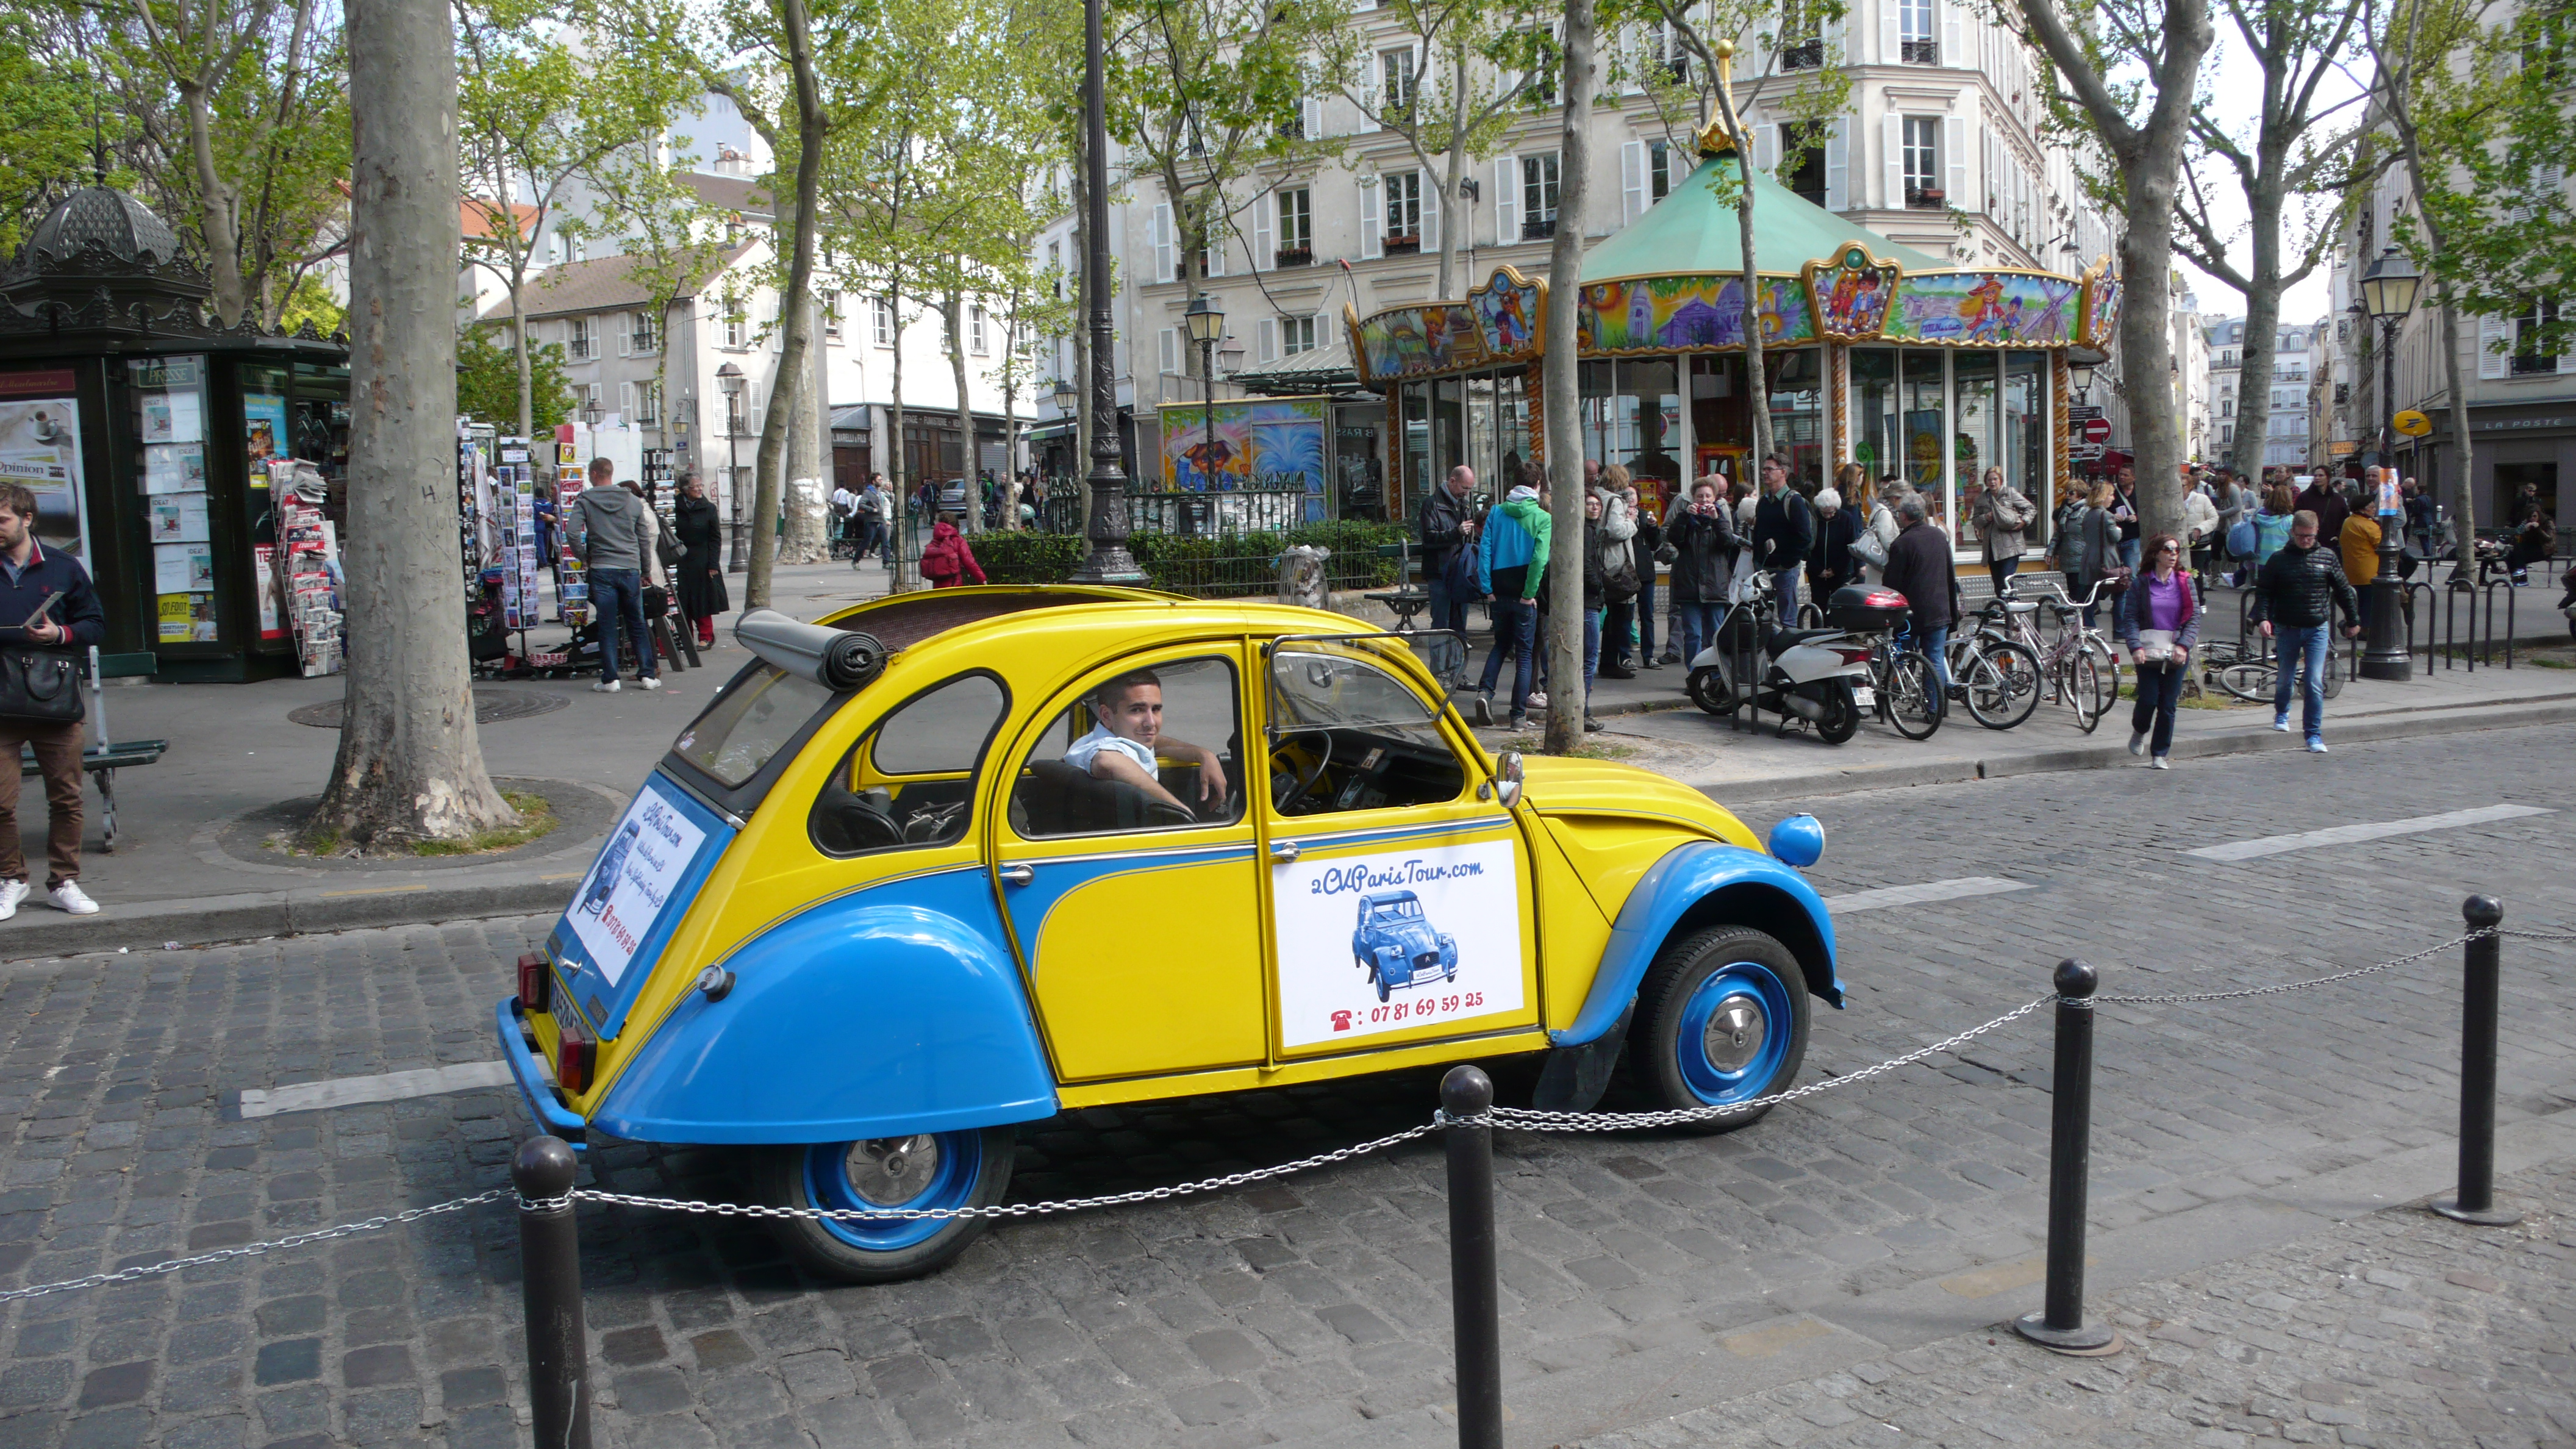 2CV Paris Tour - Visit Paris by 2CV! The Manege of Place des Abbesses